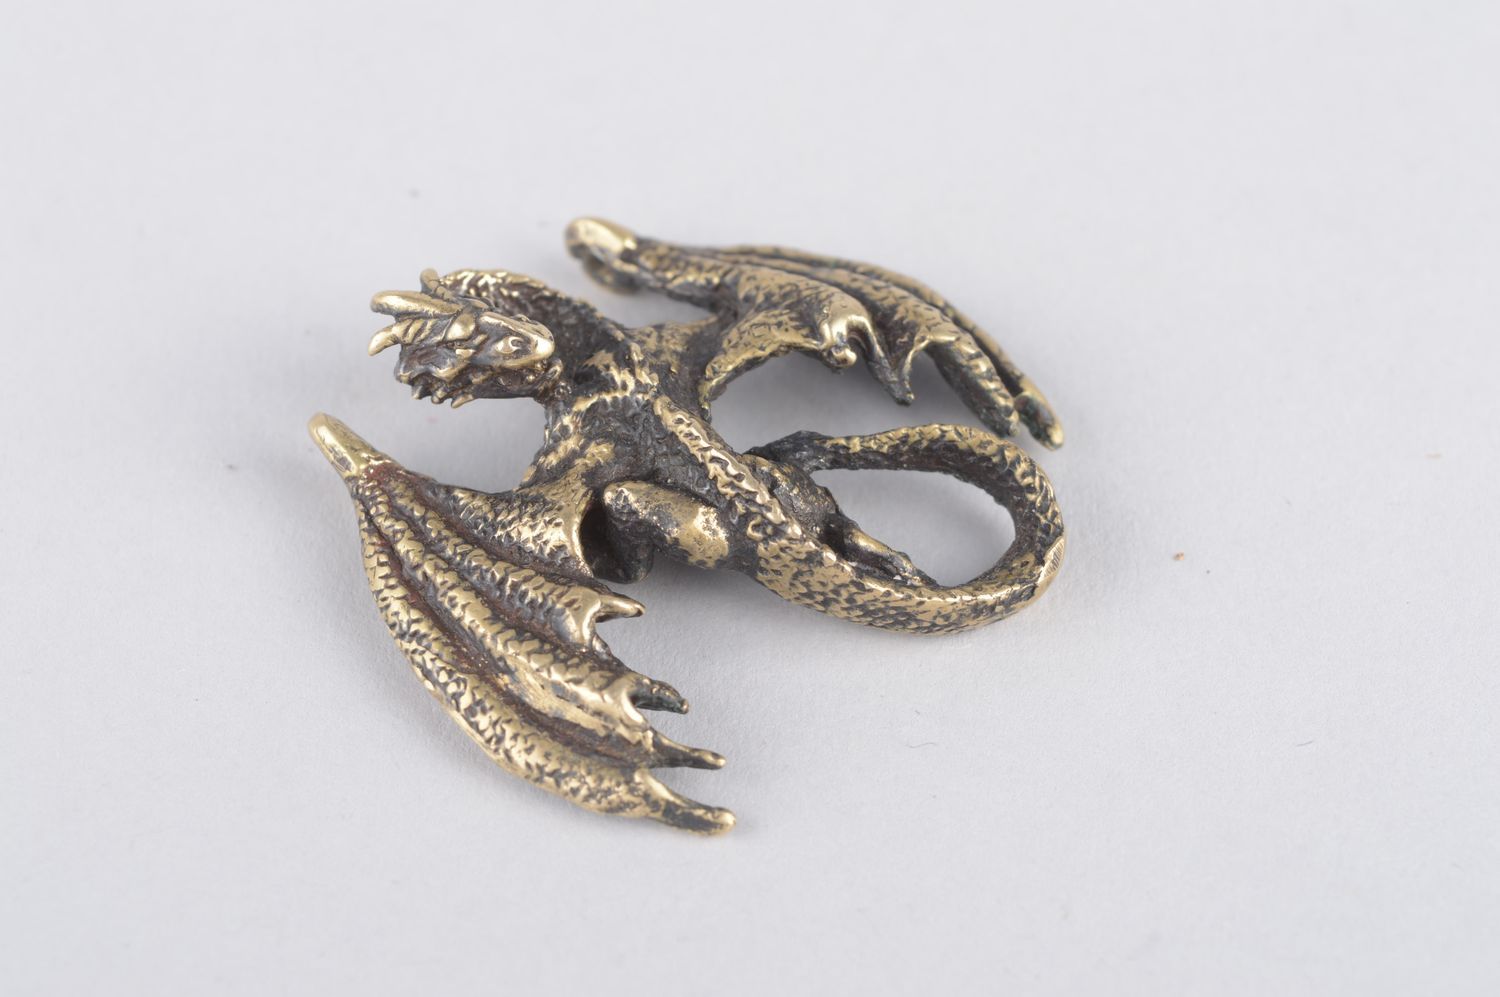 Украшение из бронзы украшение ручной работы кулон на шею авторский кулон дракон фото 3